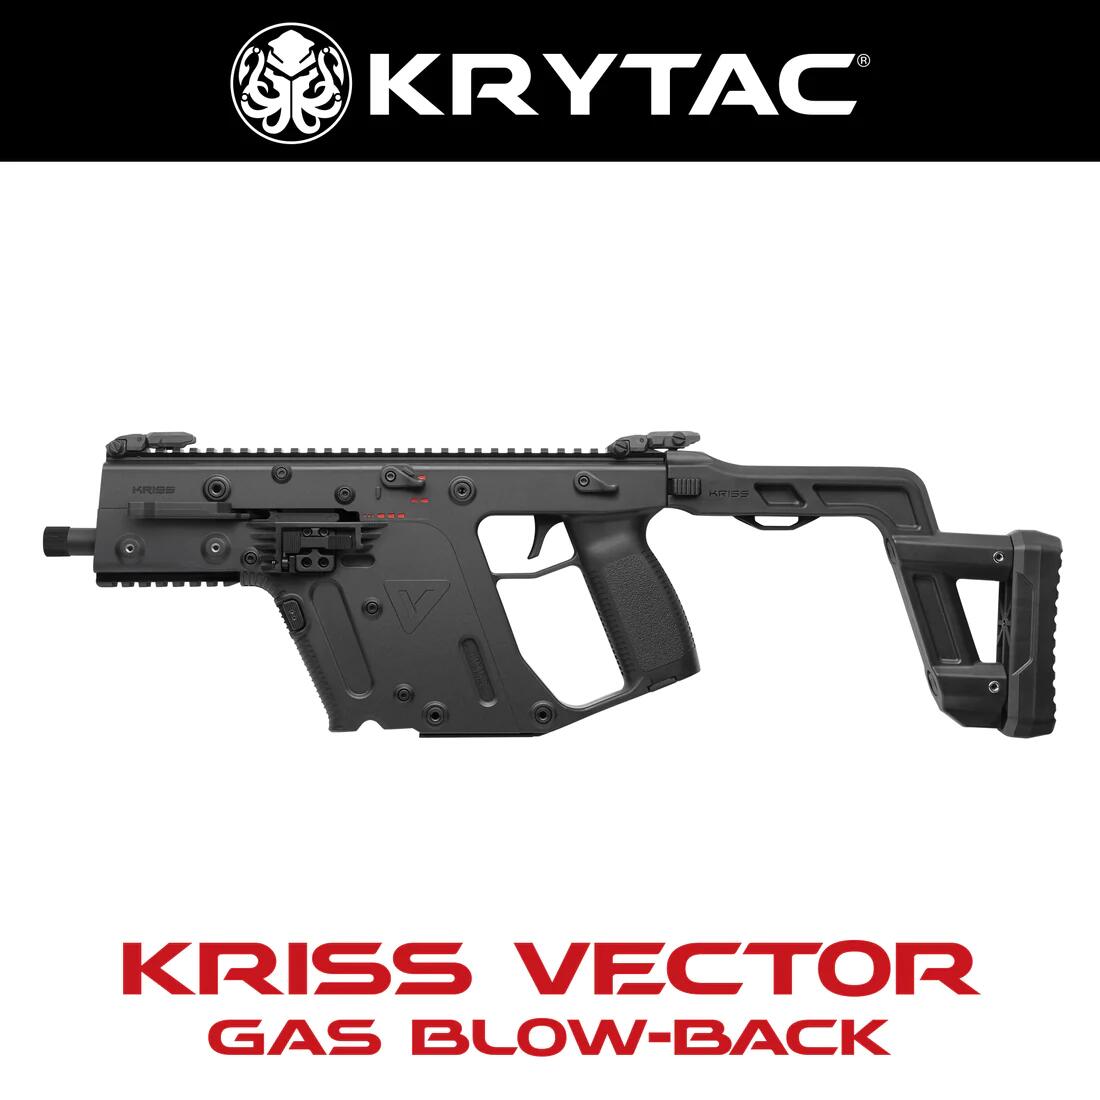 KRYTAC 海外製ガスブローバックガン本体 KRISS VECTOR クリスベクター クライタック エアガン 18歳以上 サバゲー 銃 GBB